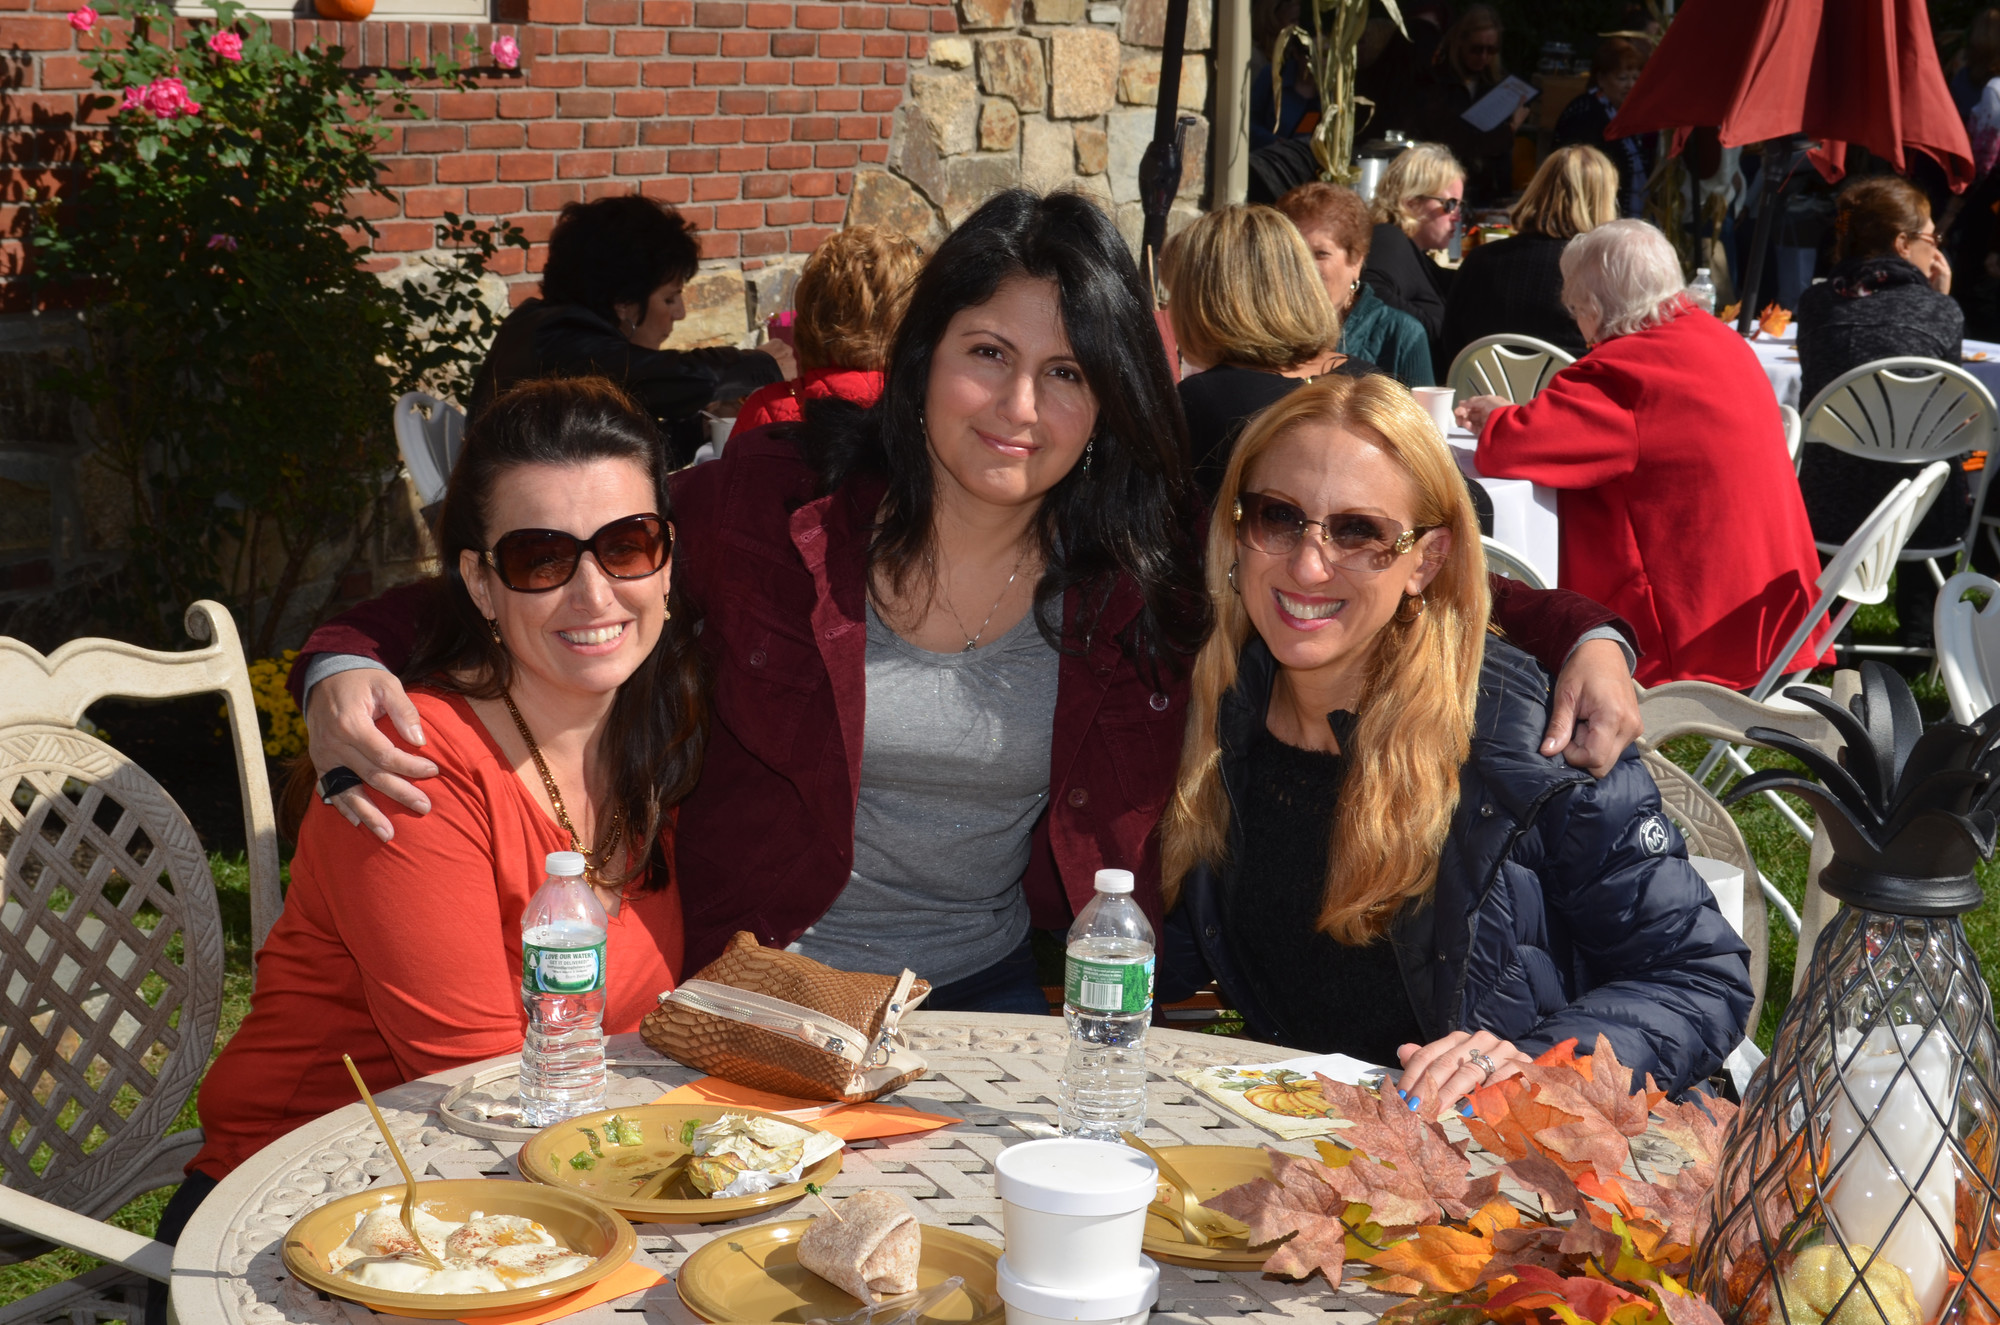 Andrea Panzavecchia, left, Nina Faust and Lauren Sklarin came out to enjoy the Garden Potpourri.